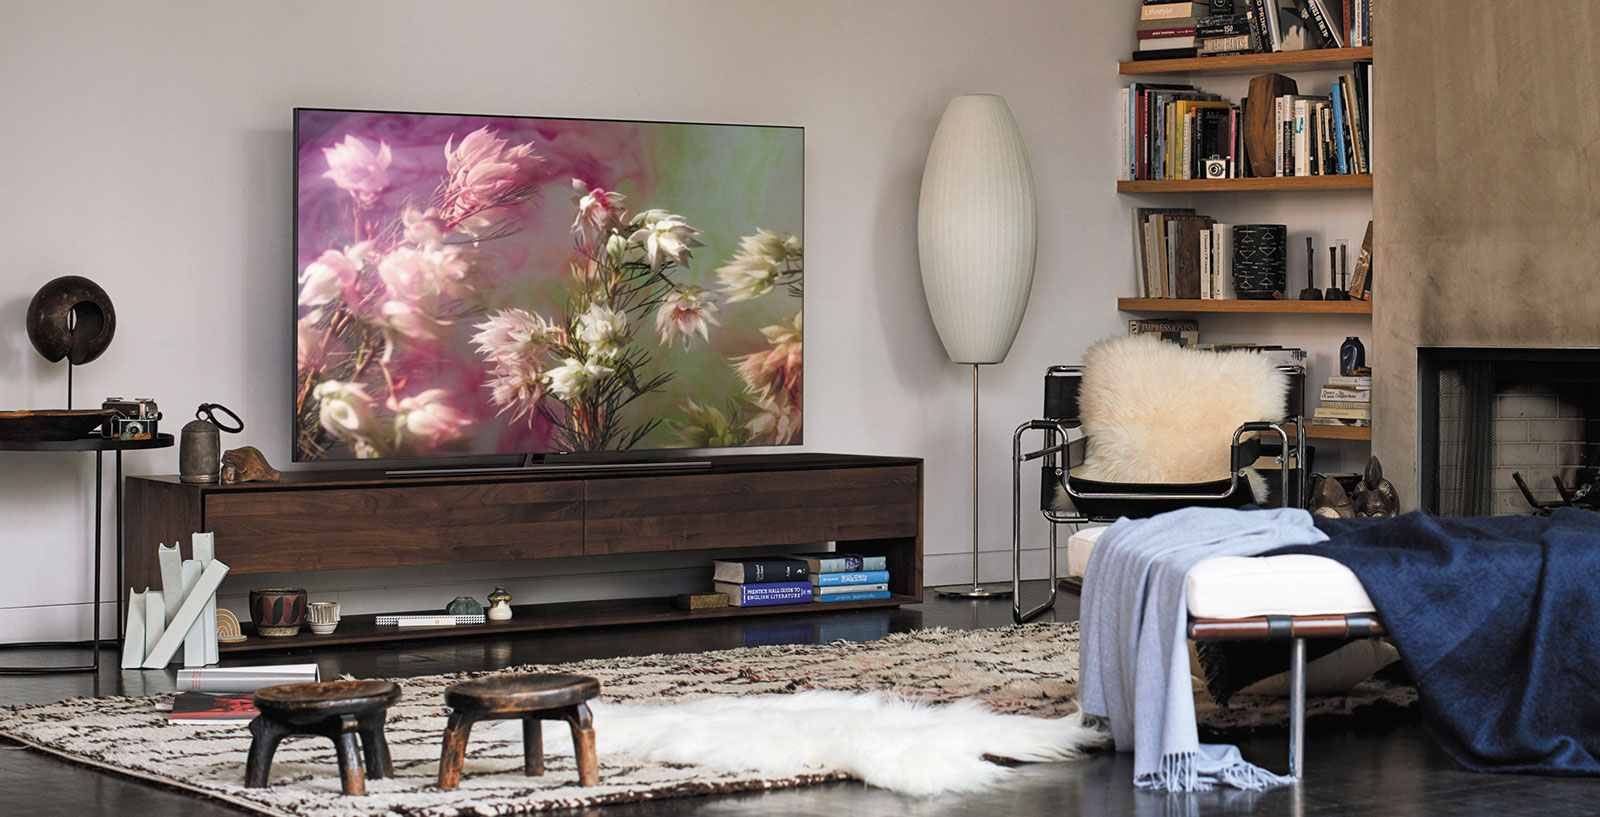 Samsung's 2018 4K TVs arrive with QLED, wallpaper mode - Pickr